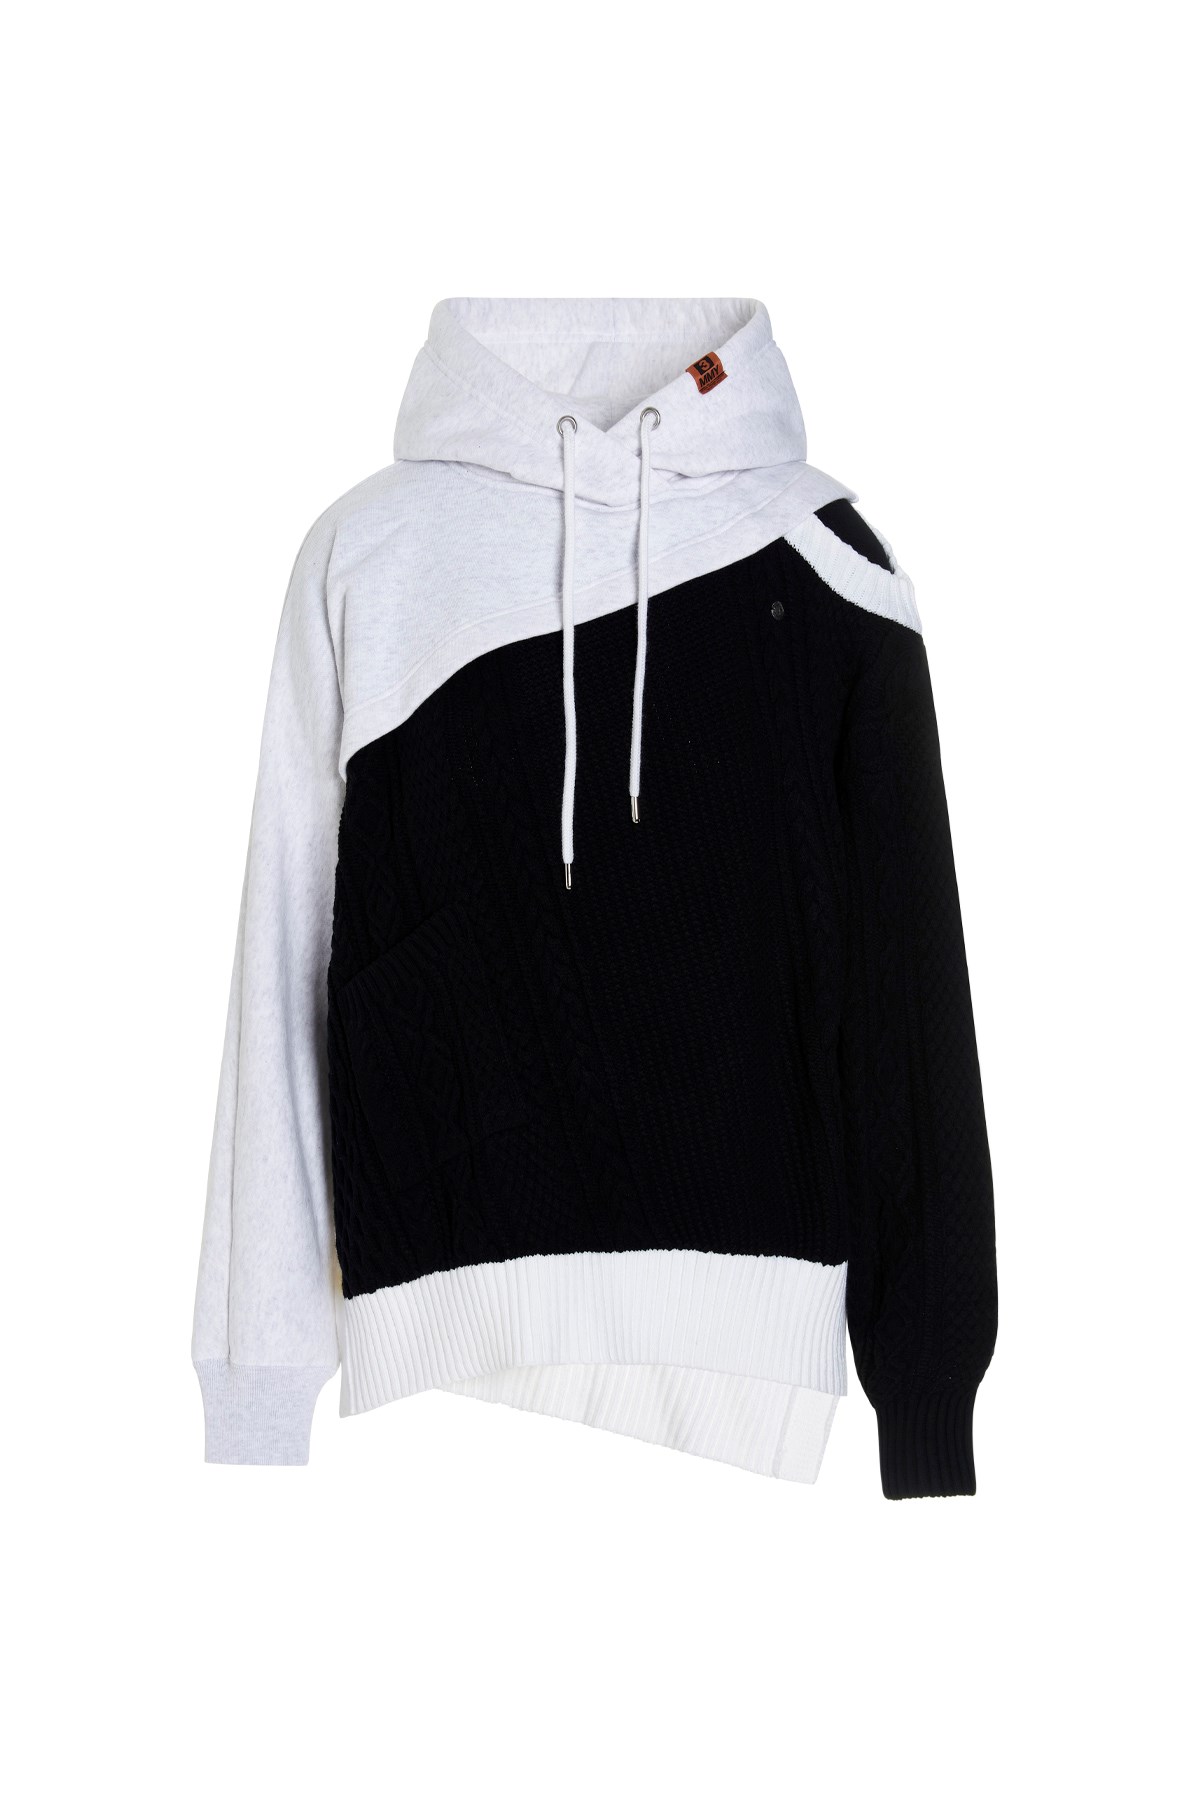 MAISON MIHARA YASUHIRO Sweatshirt-Style Insert Hooded Sweater